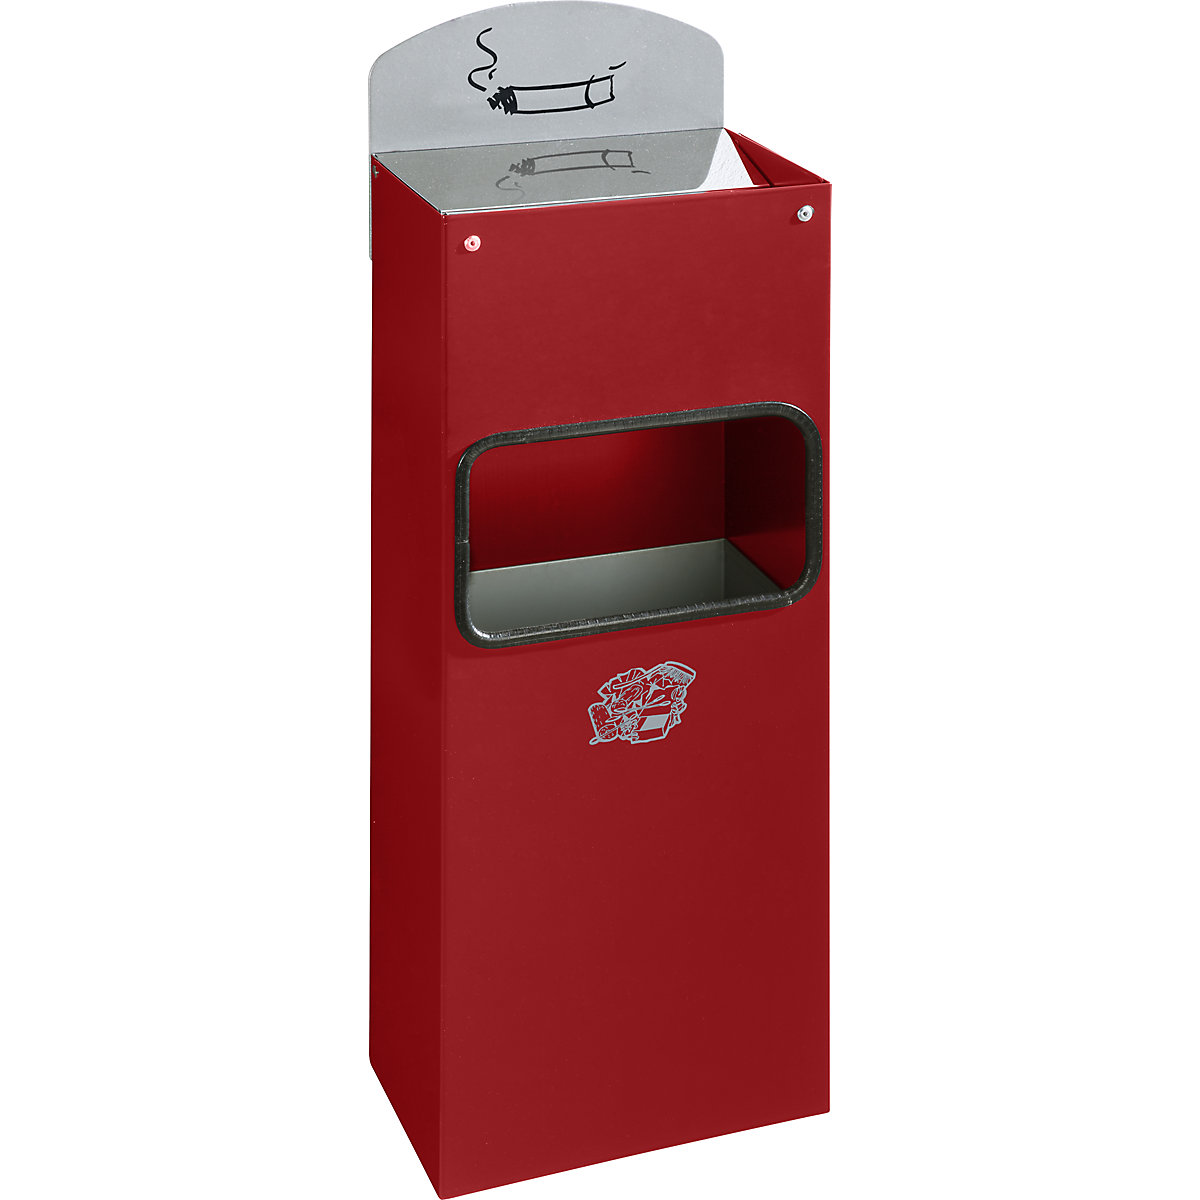 Kombinovaný nástěnný popelník s vhazovacím otvorem pro odpadky – VAR, v x š x h 505 x 200 x 125 mm, ocelový plech, ohnivě červená-2